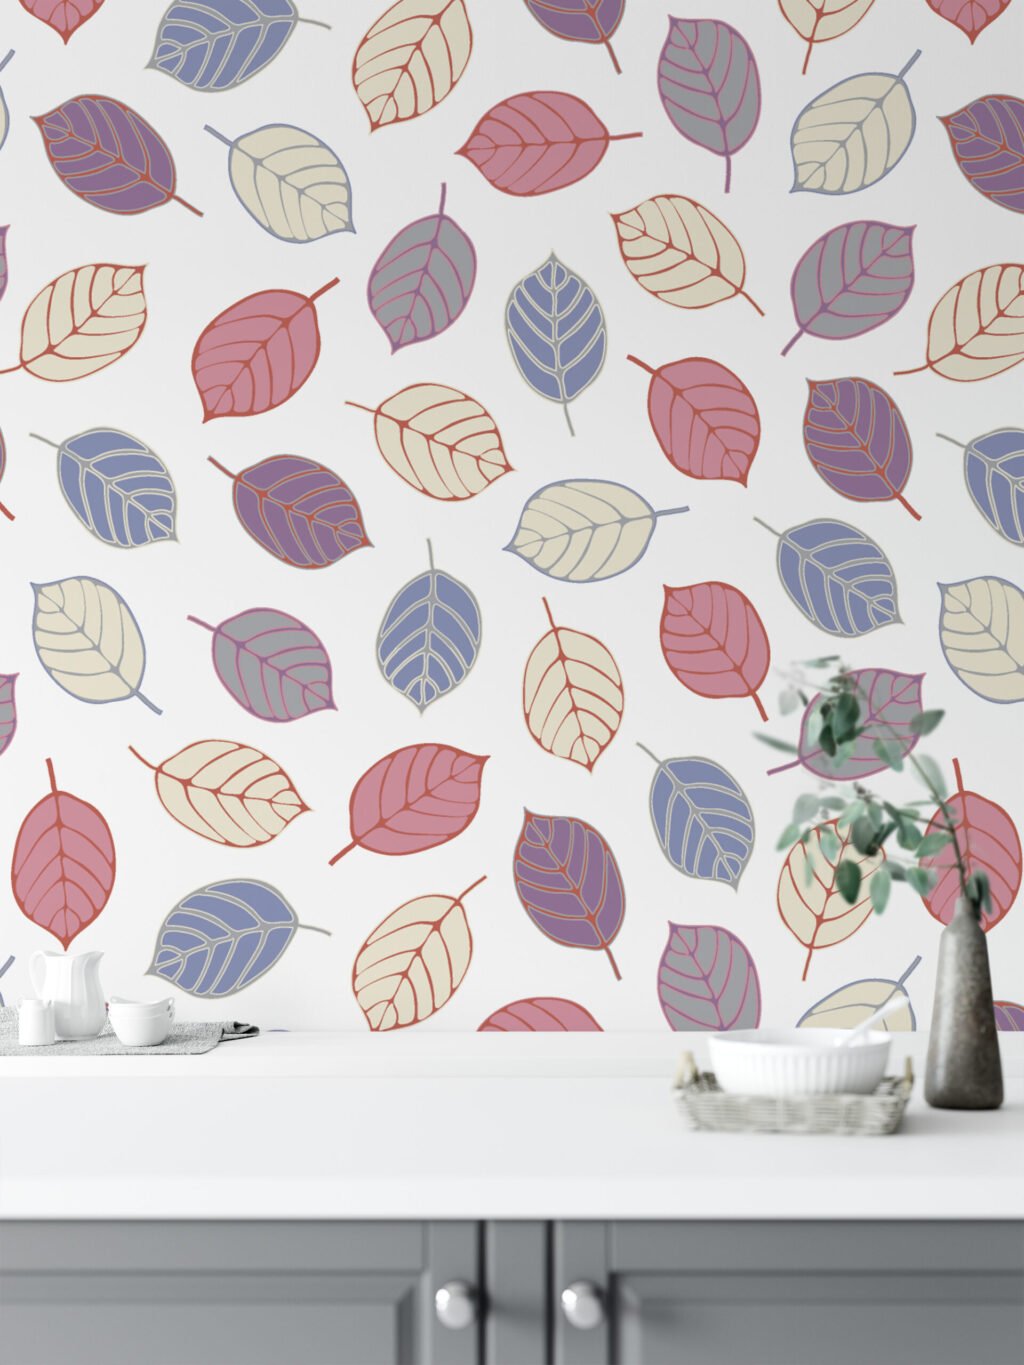 Soyut Renkli Yapraklar Duvar Kağıdı, Capcanlı Sonbahar Yaprakları 3D Duvar Posteri Yaprak Desenli Duvar Kağıtları 2